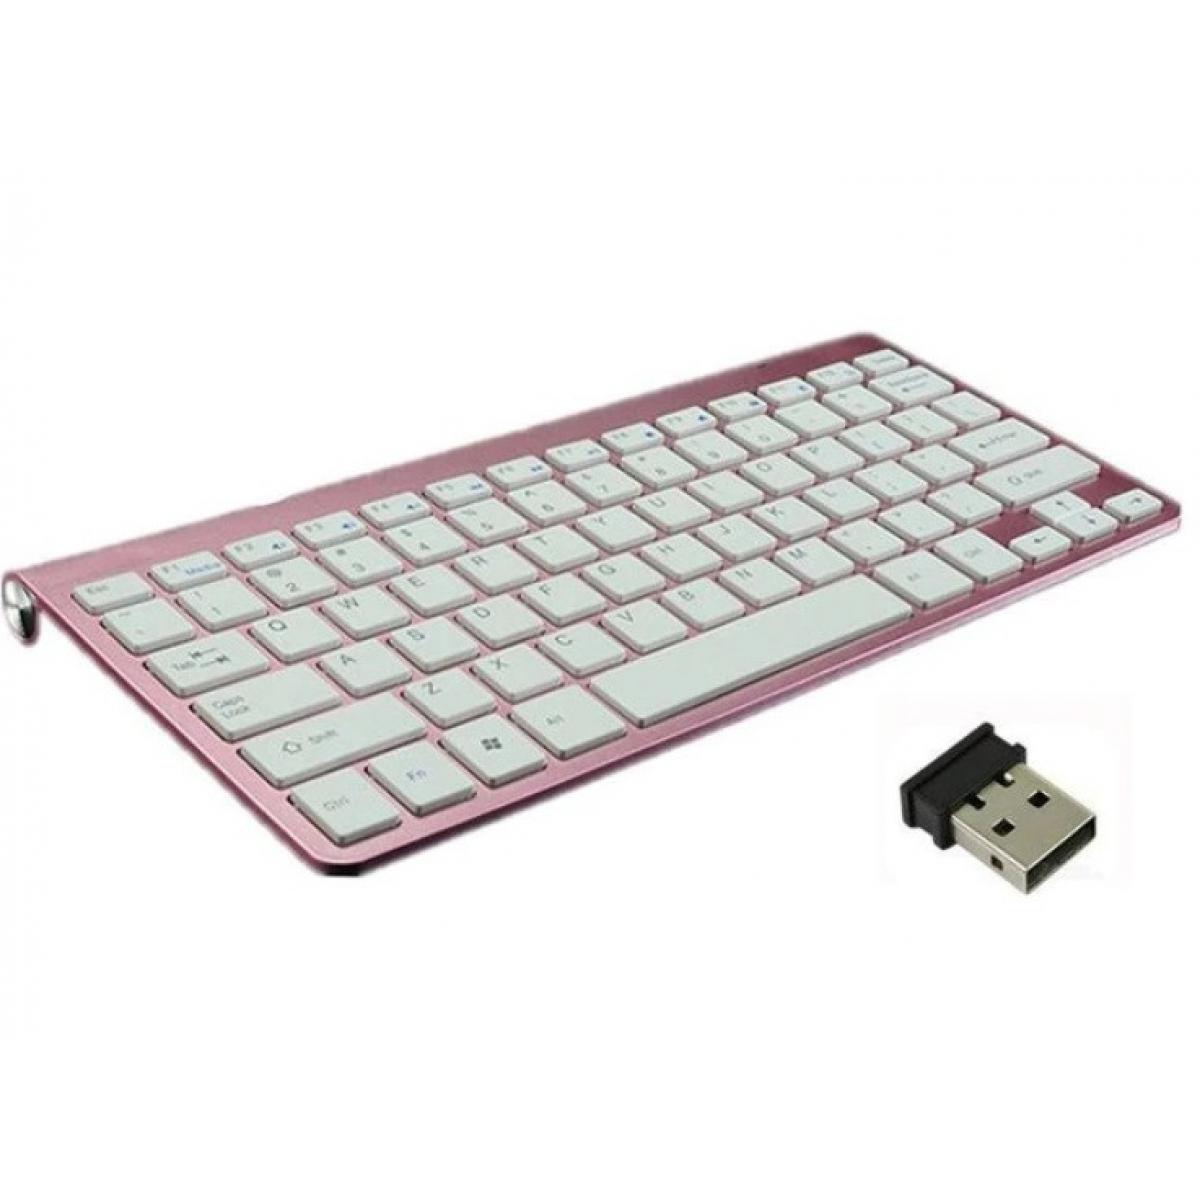 Shot - Clavier Sans Fil Metal pour PC DELL USB QWERTY Piles (ROSE) - Clavier